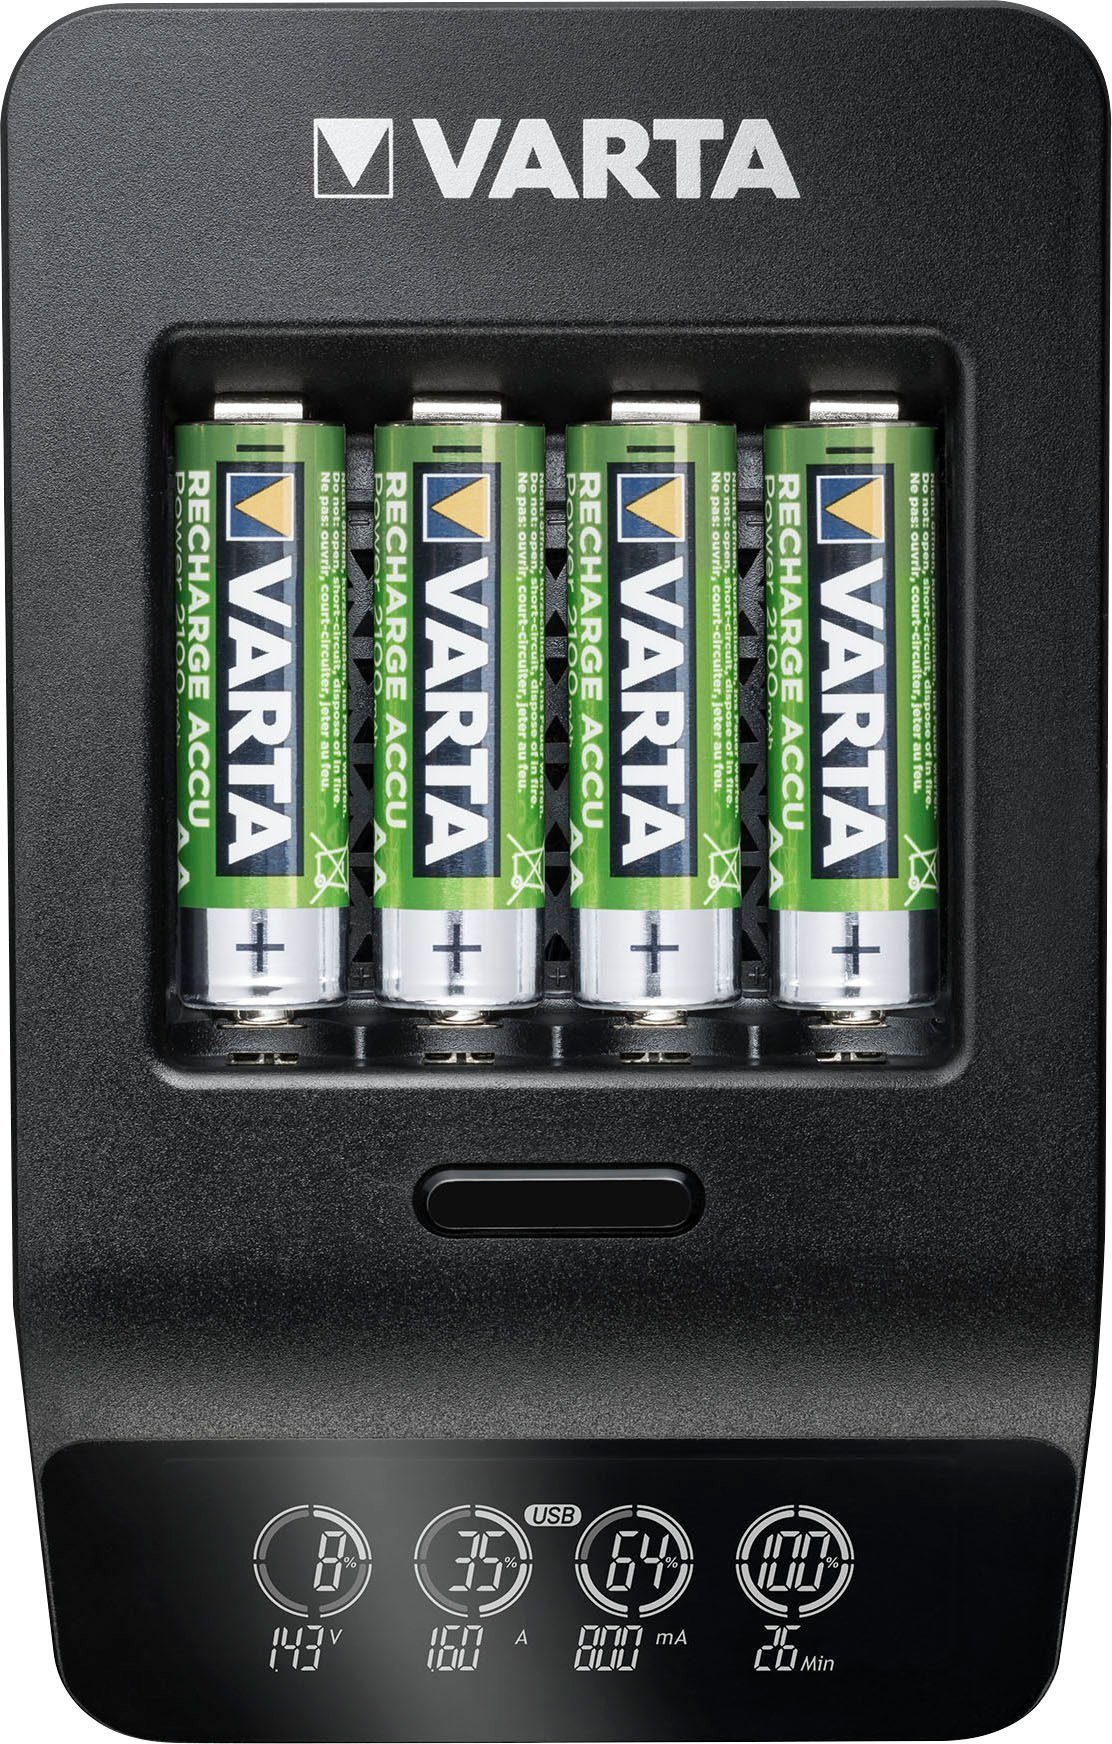 VARTA VARTA LCD Smart und AA/AAA-Akkus für Charger+ Powerstation Micro 4 USB-Geräte